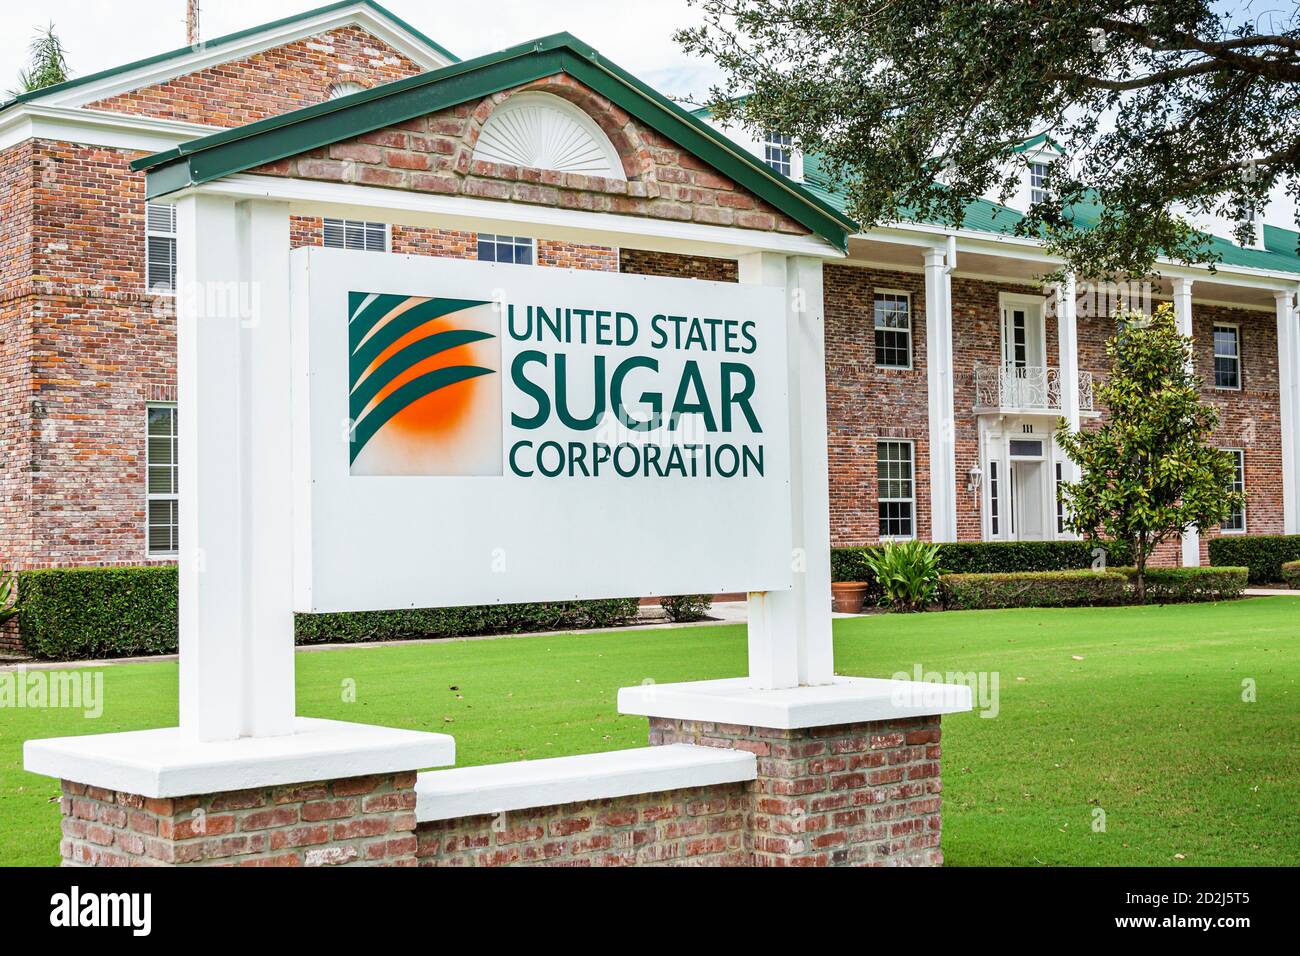 Floride, Clewiston, États-UnisSugar Corporation, bureau de siège d'entreprise agricole, producteur de canne à sucre, bâtiment extérieur, panneau, voyages des visiteurs Banque D'Images